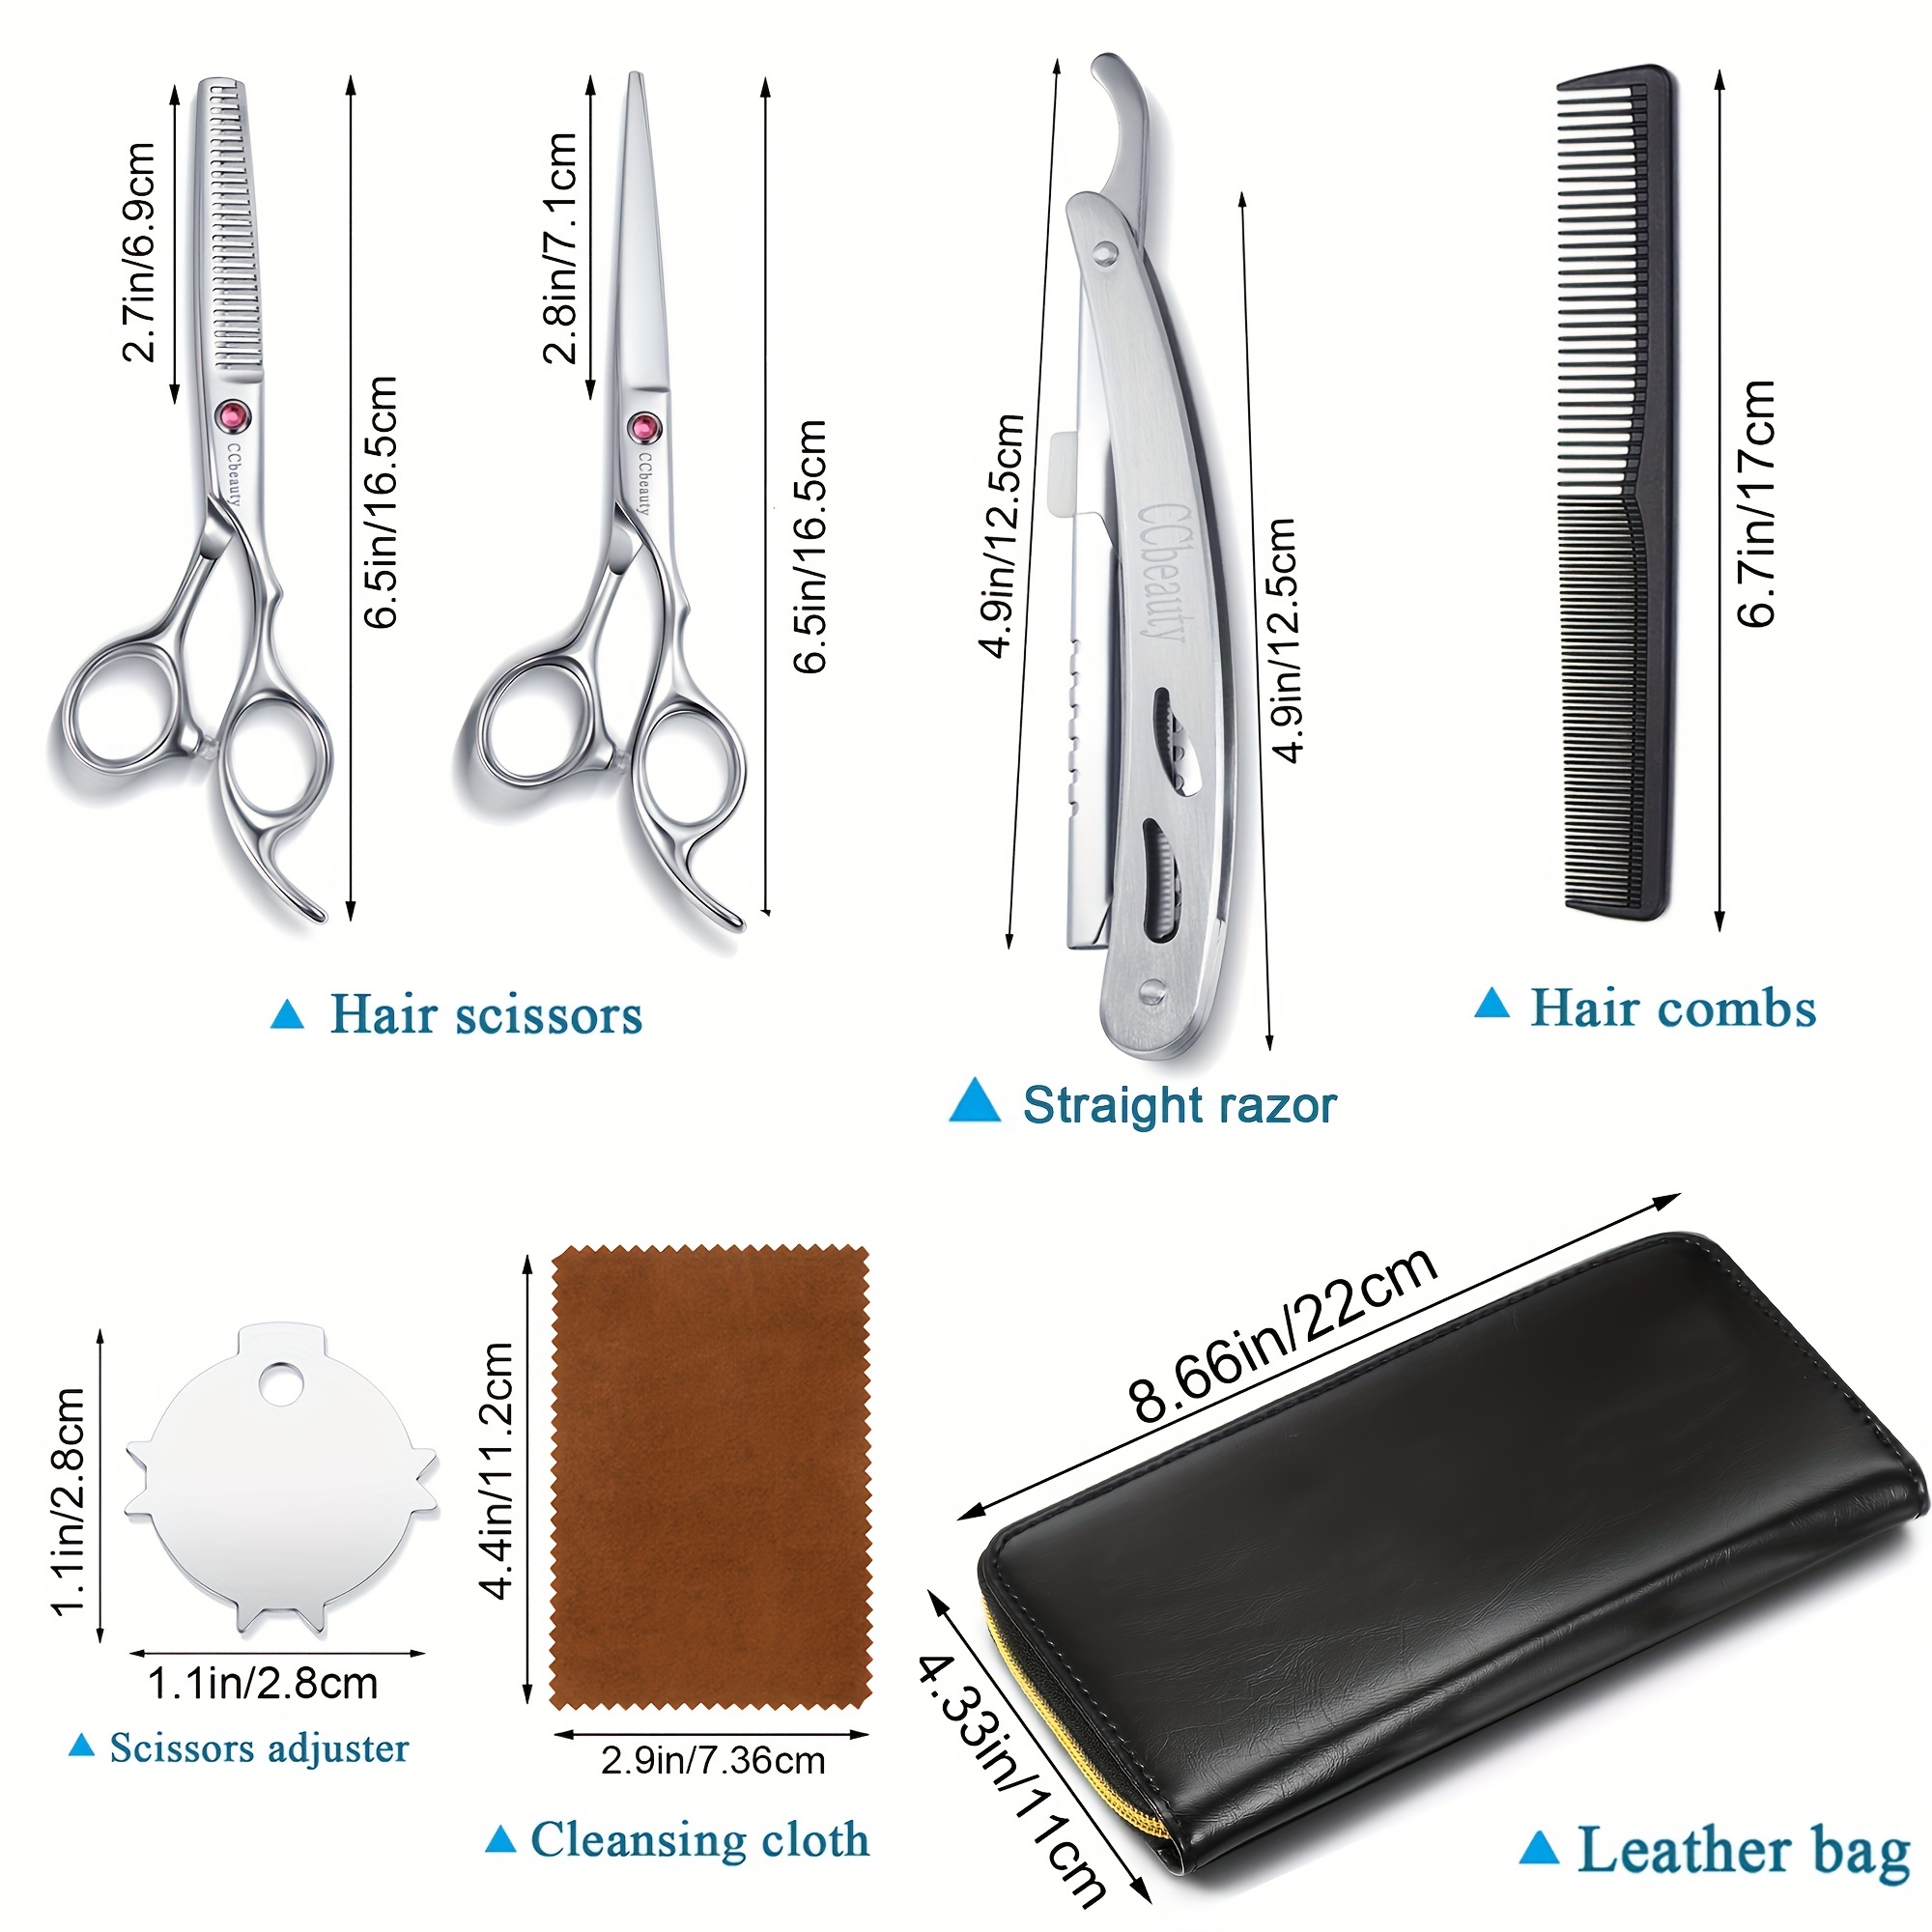 Hair Cutting Scissors/Shears, Professional Hair Shears - 6.7